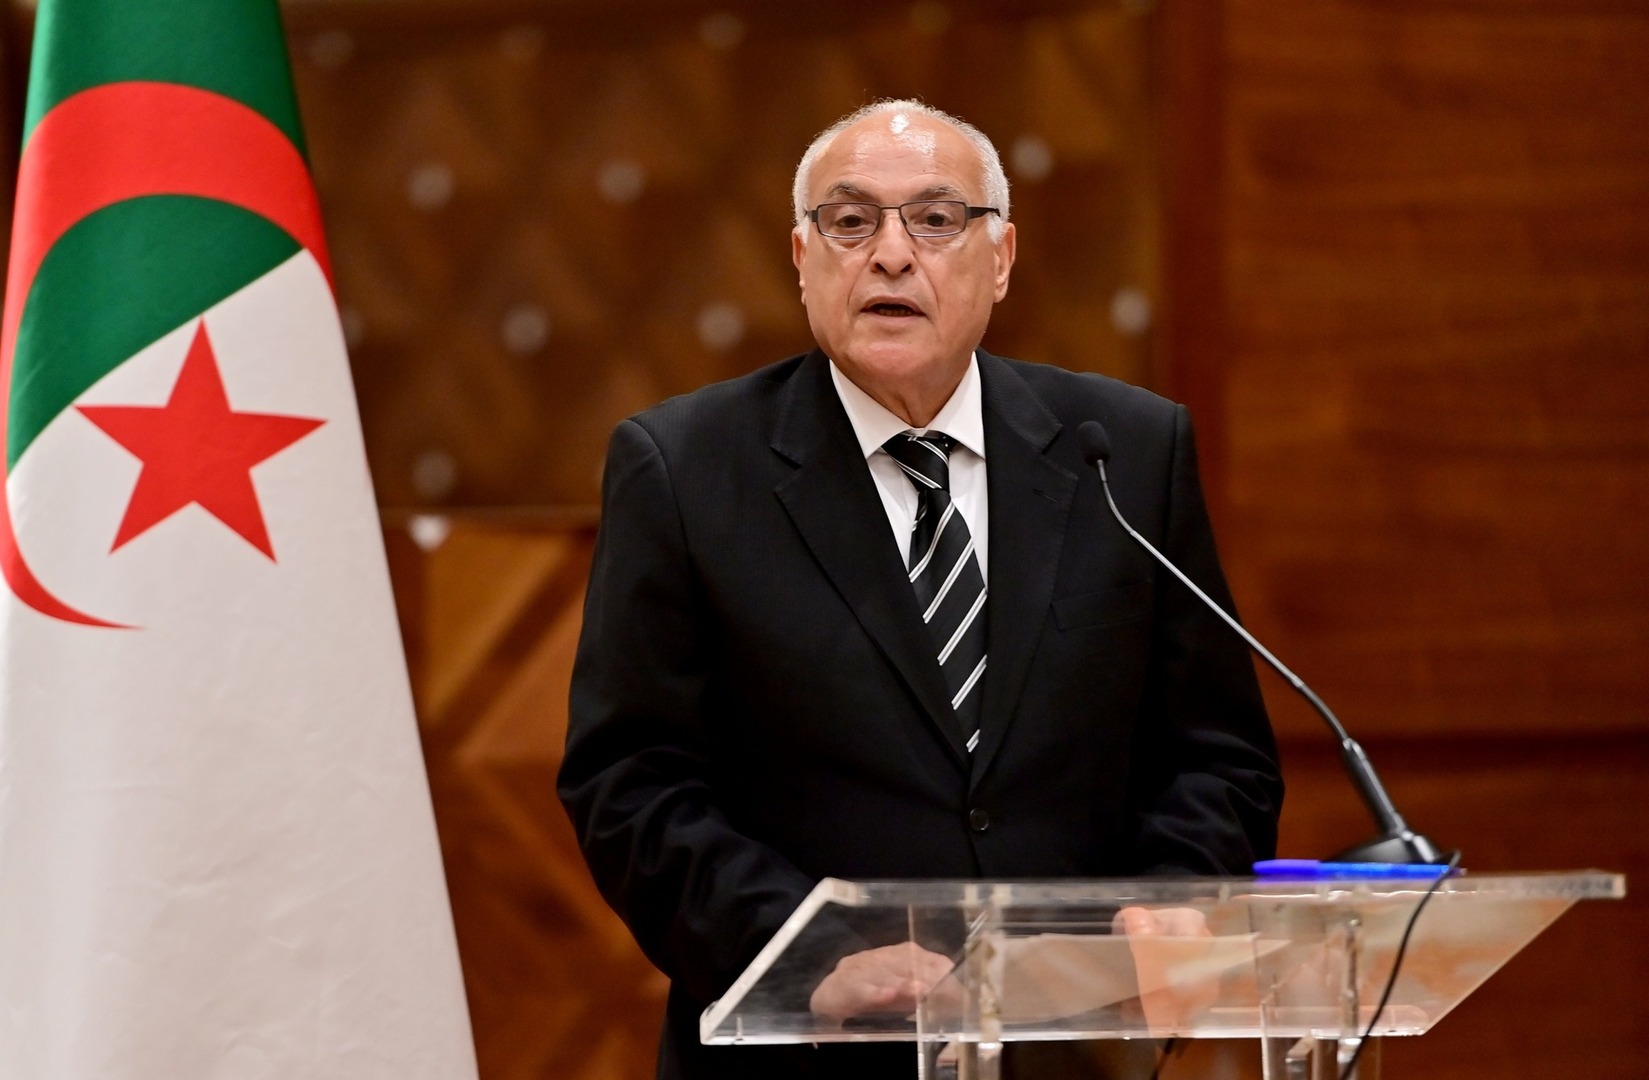 الجزائر تعتزم إعادة طرح ملف عضوية فلسطين أمام مجلس الأمن (فيديو)